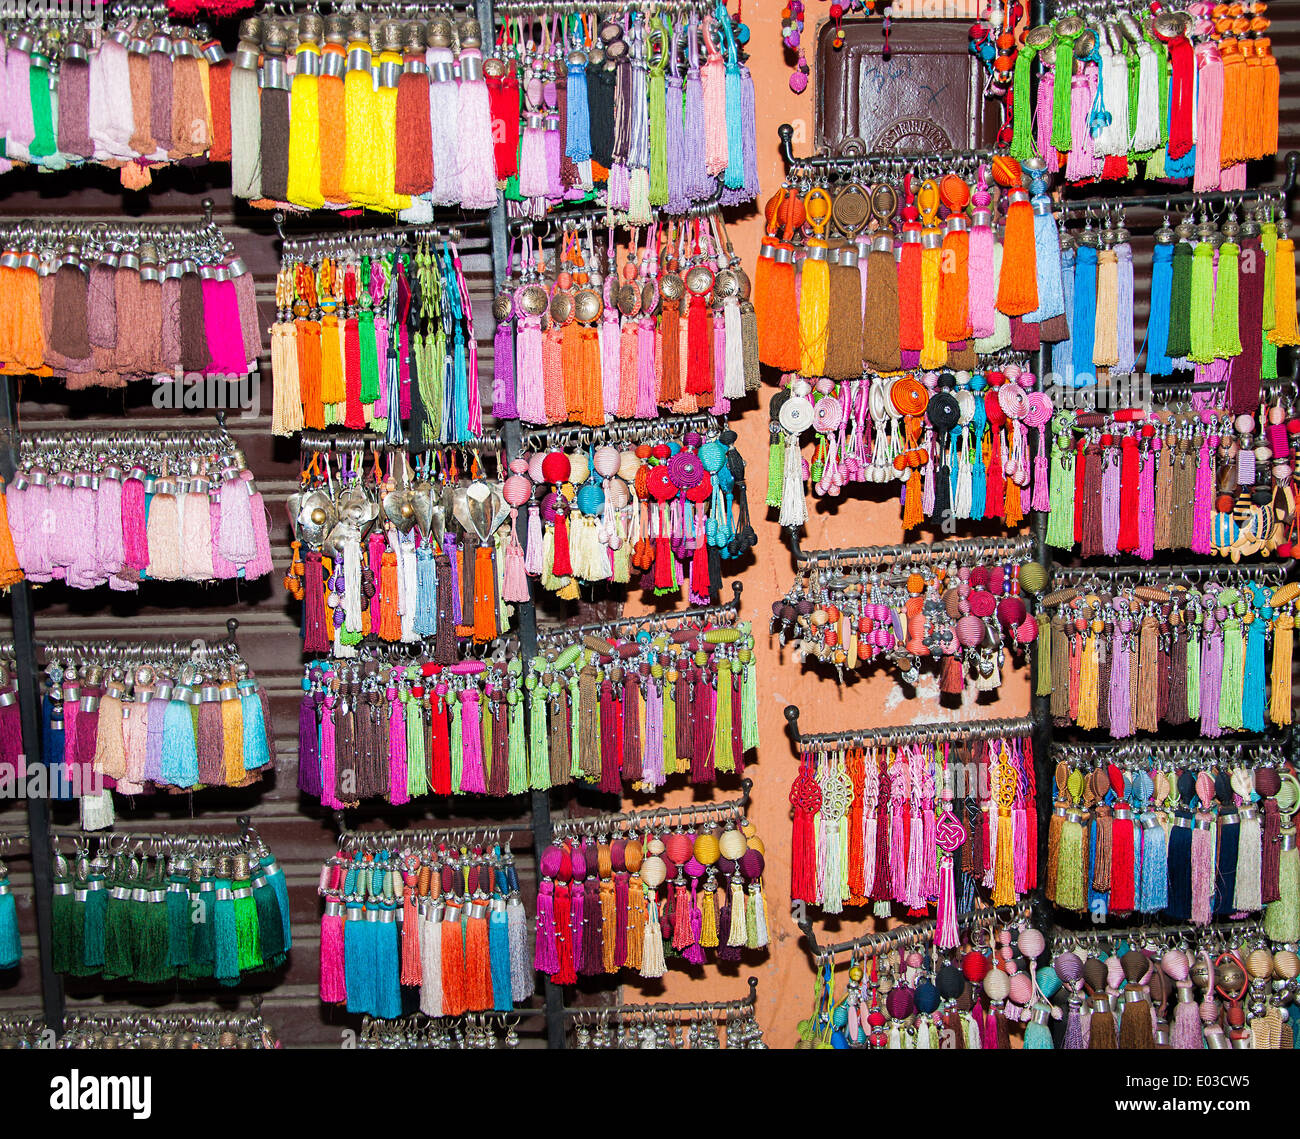 Marrakesch, Marokko: Farbenfrohe Quasten in einem Bazar für Textilien Dekoration Stockfoto